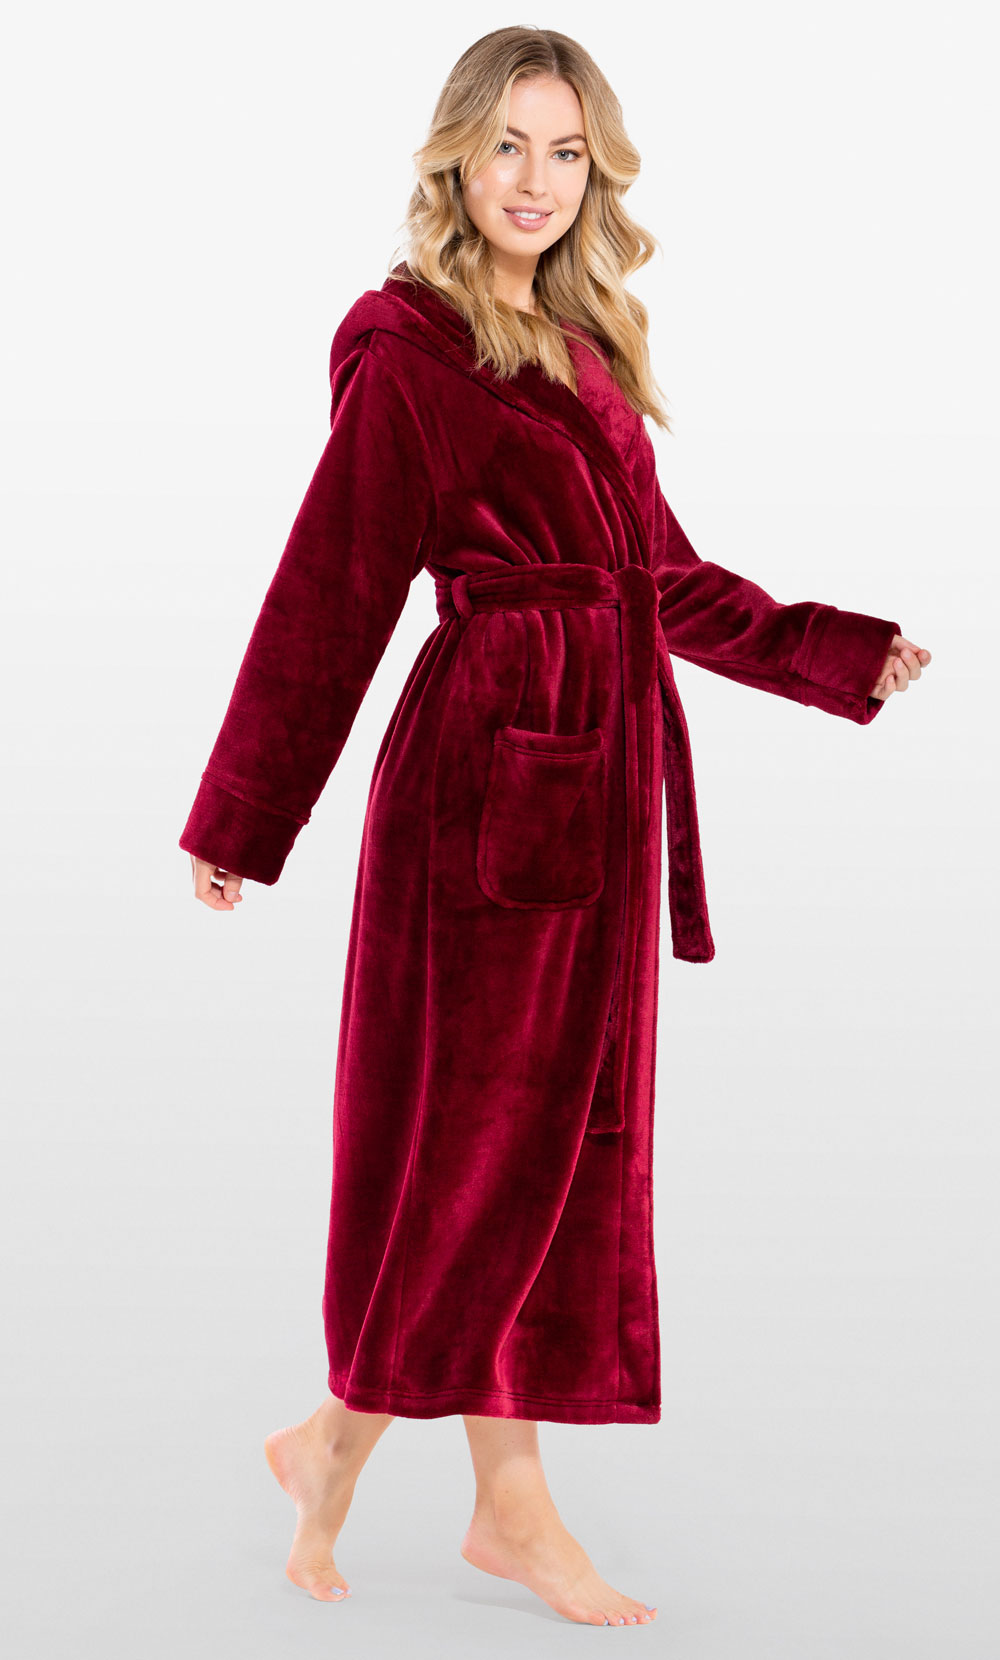 Super Soft Burgundy Plush Hooded Women's Robe-Robemart.com